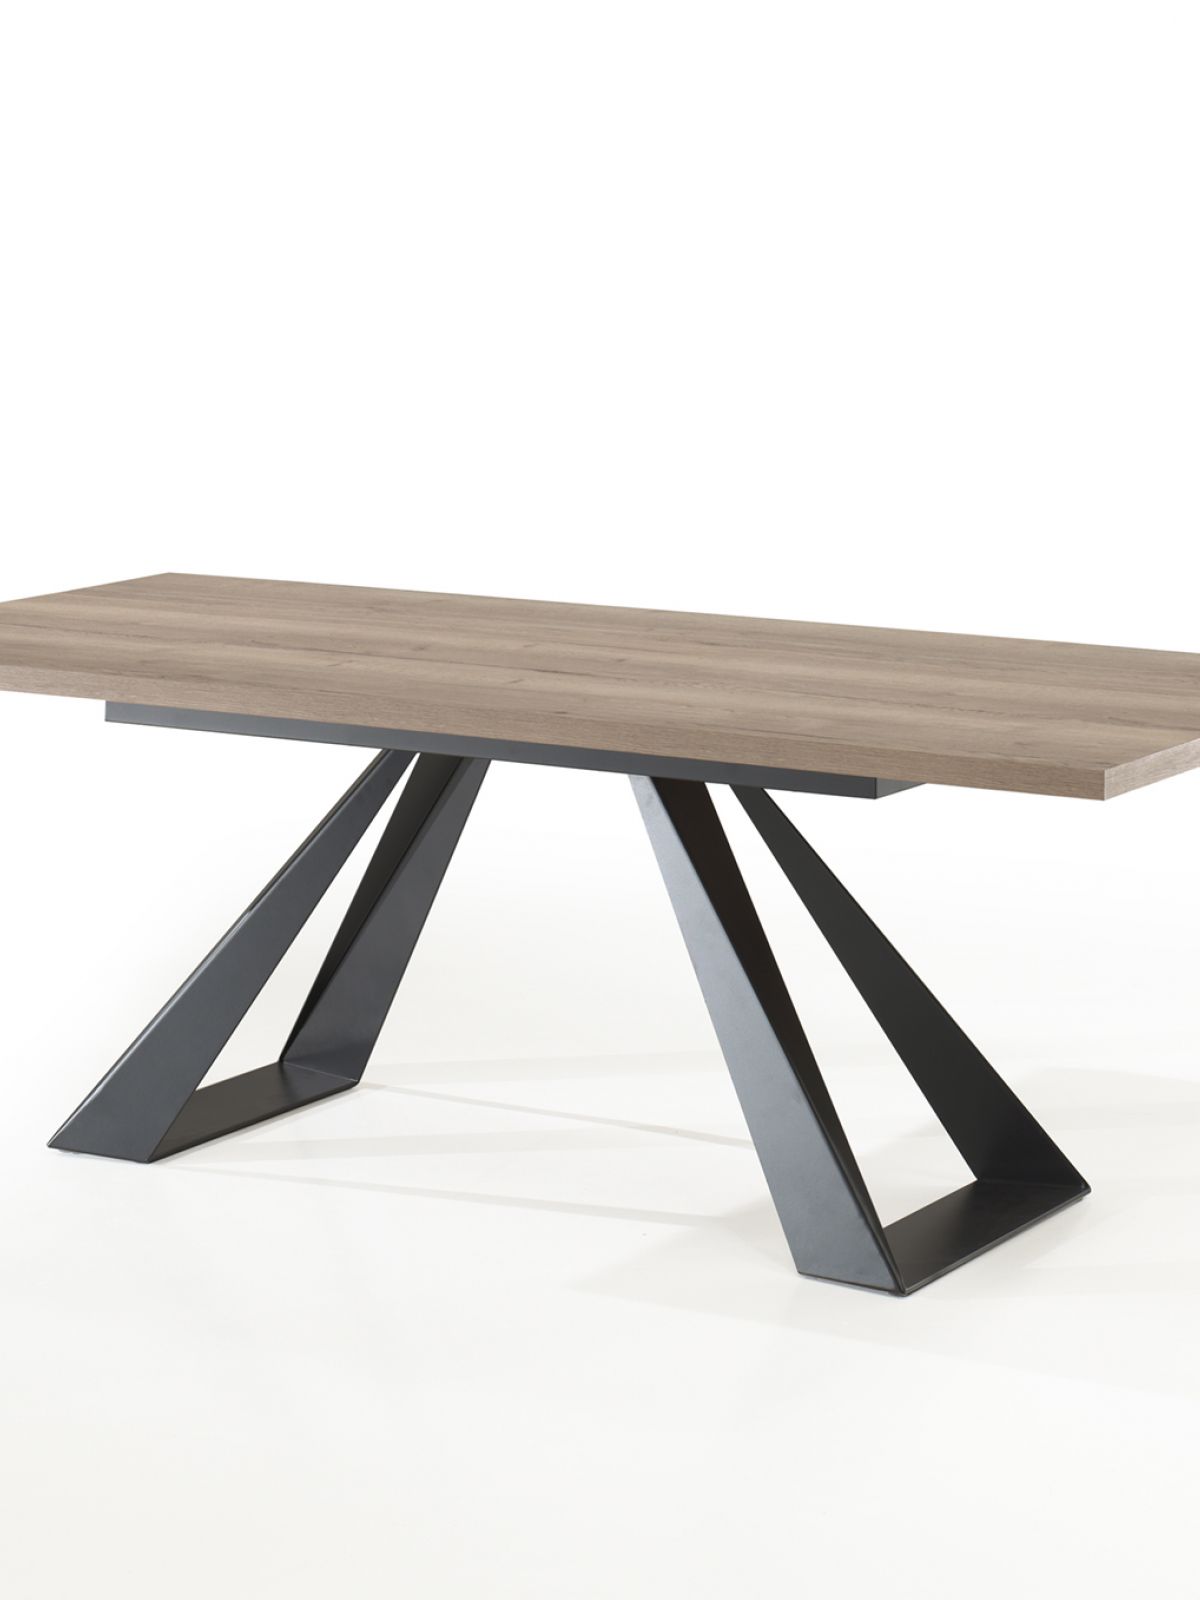 Table rectangulaire fixe pied métal - 2,20m